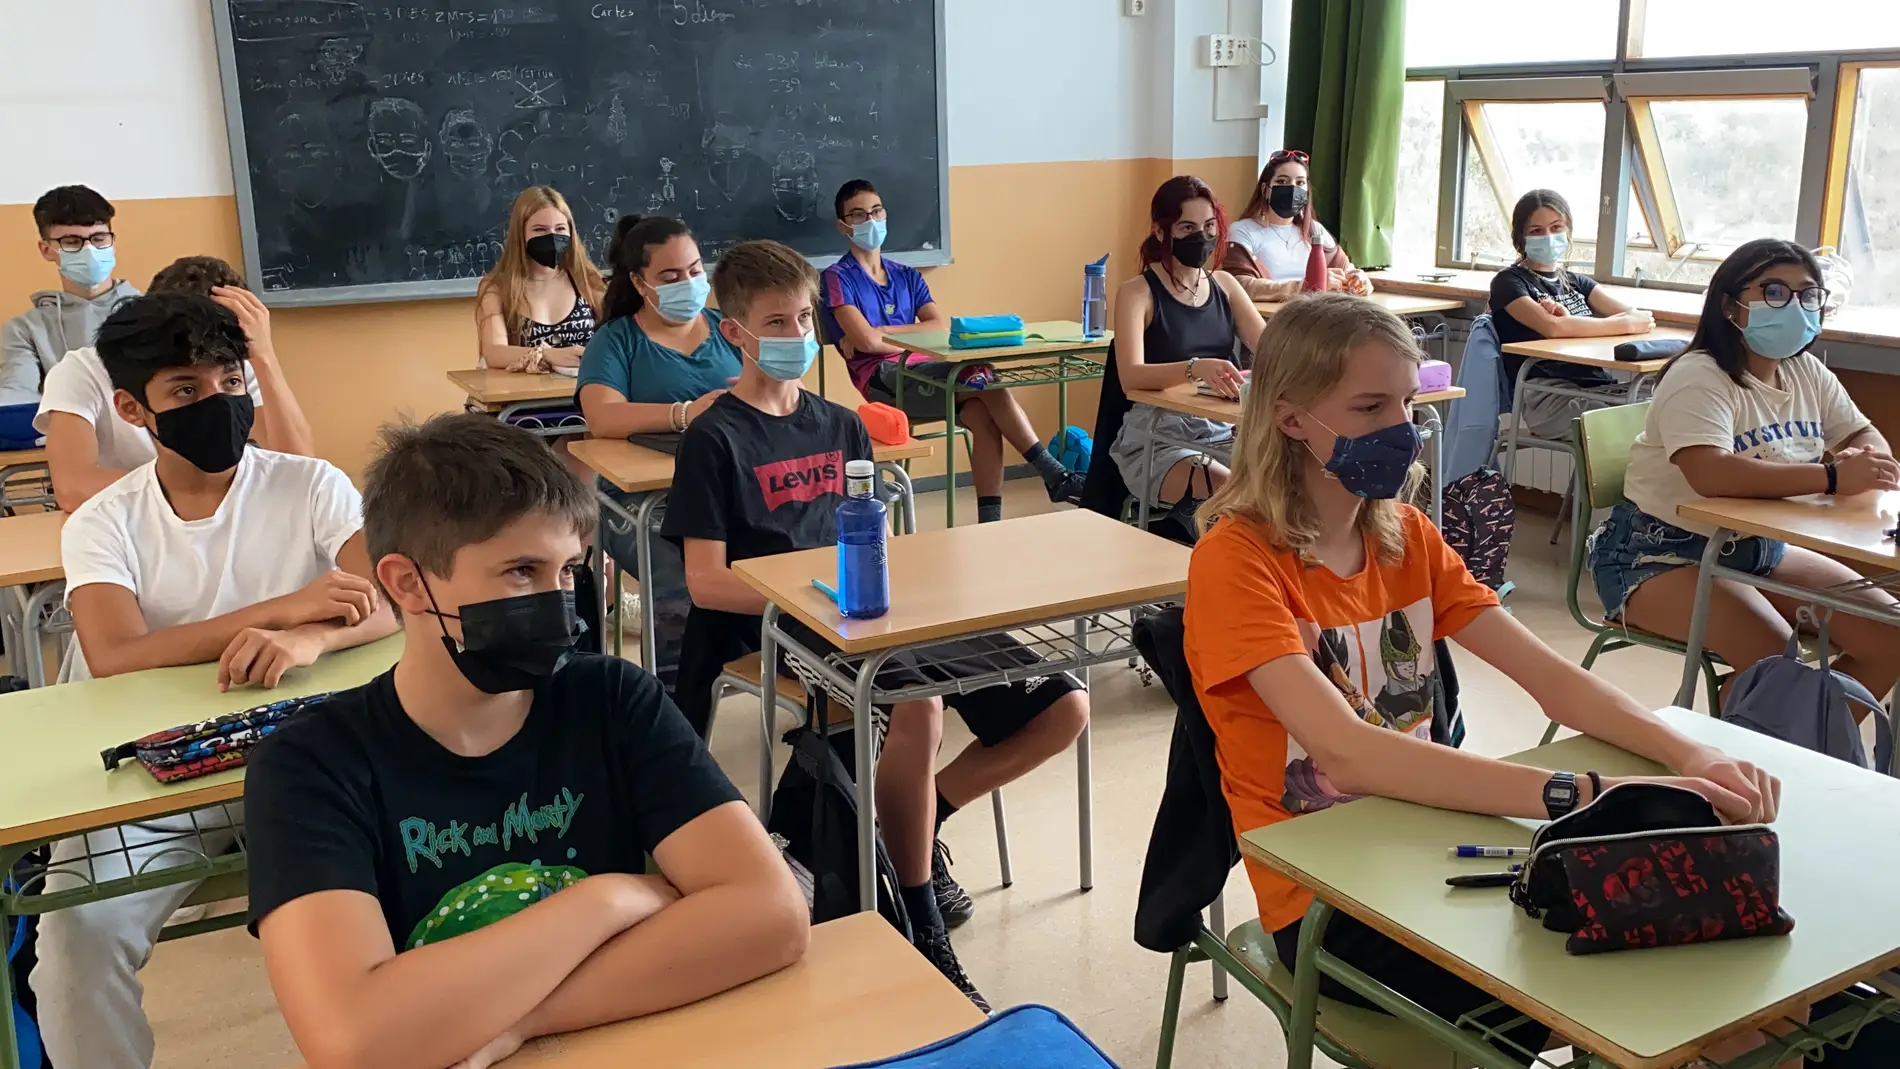 Cataluña levanta la obligación de la mascarilla en el recreo de las escuelas a partir dels jueves